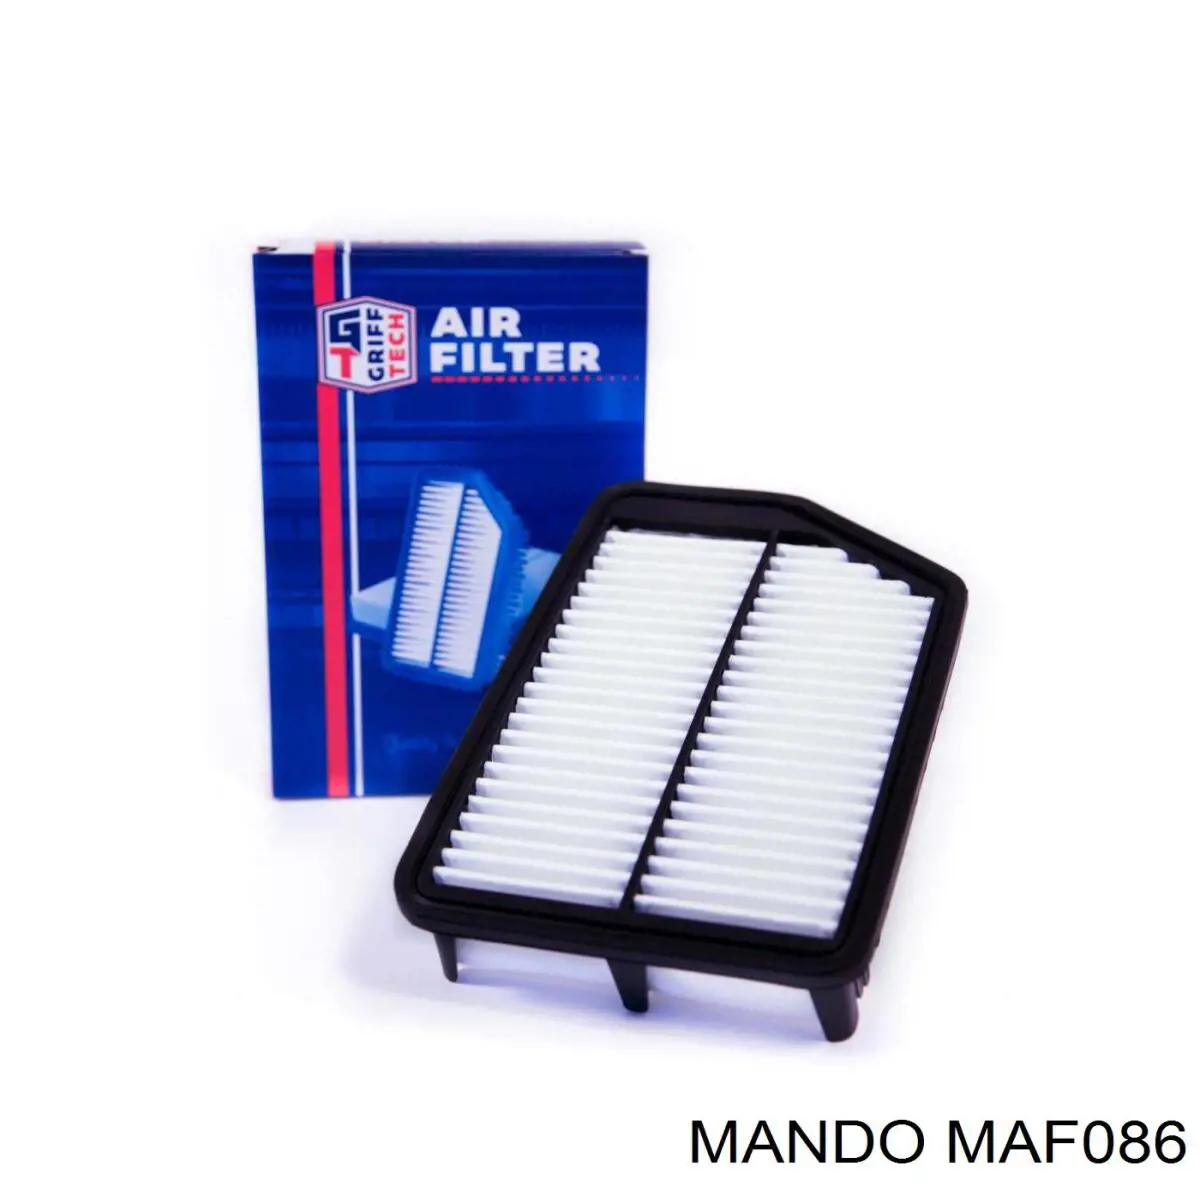 MAF086 Mando воздушный фильтр